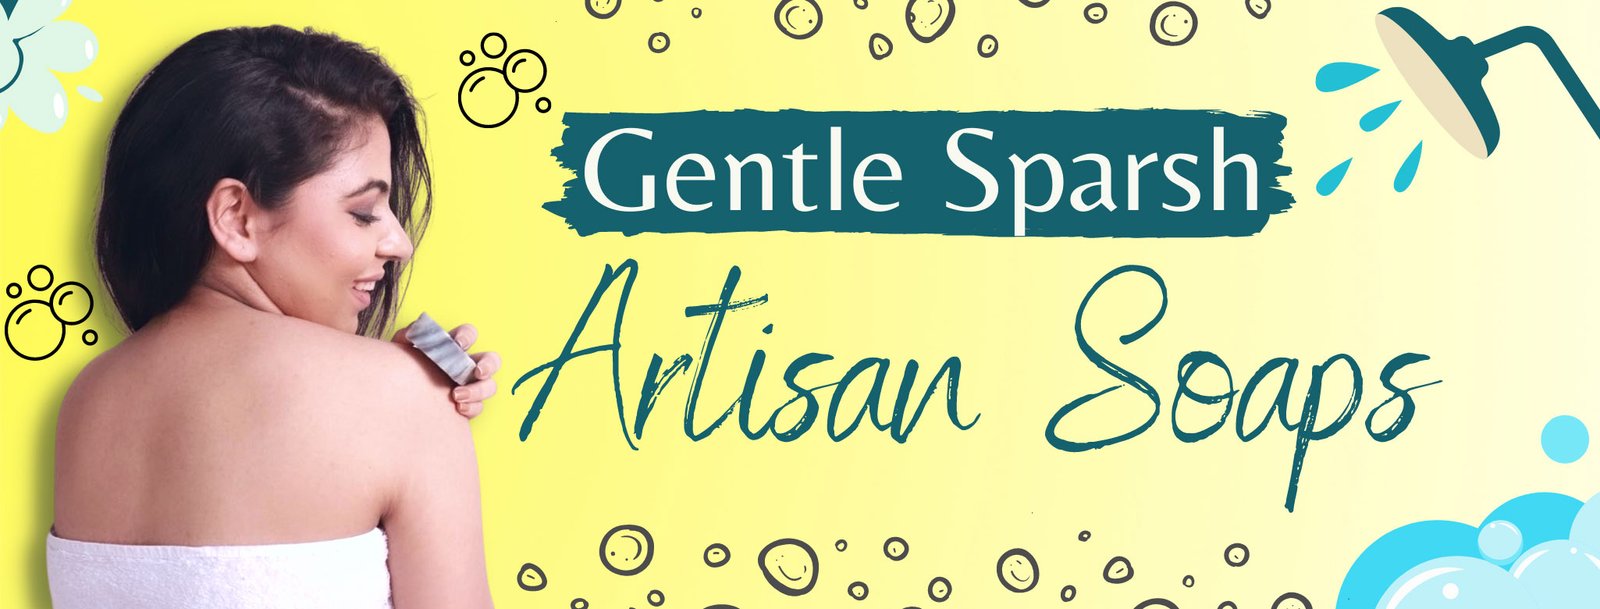 Artisan-soaps-Gentle-Sparsh